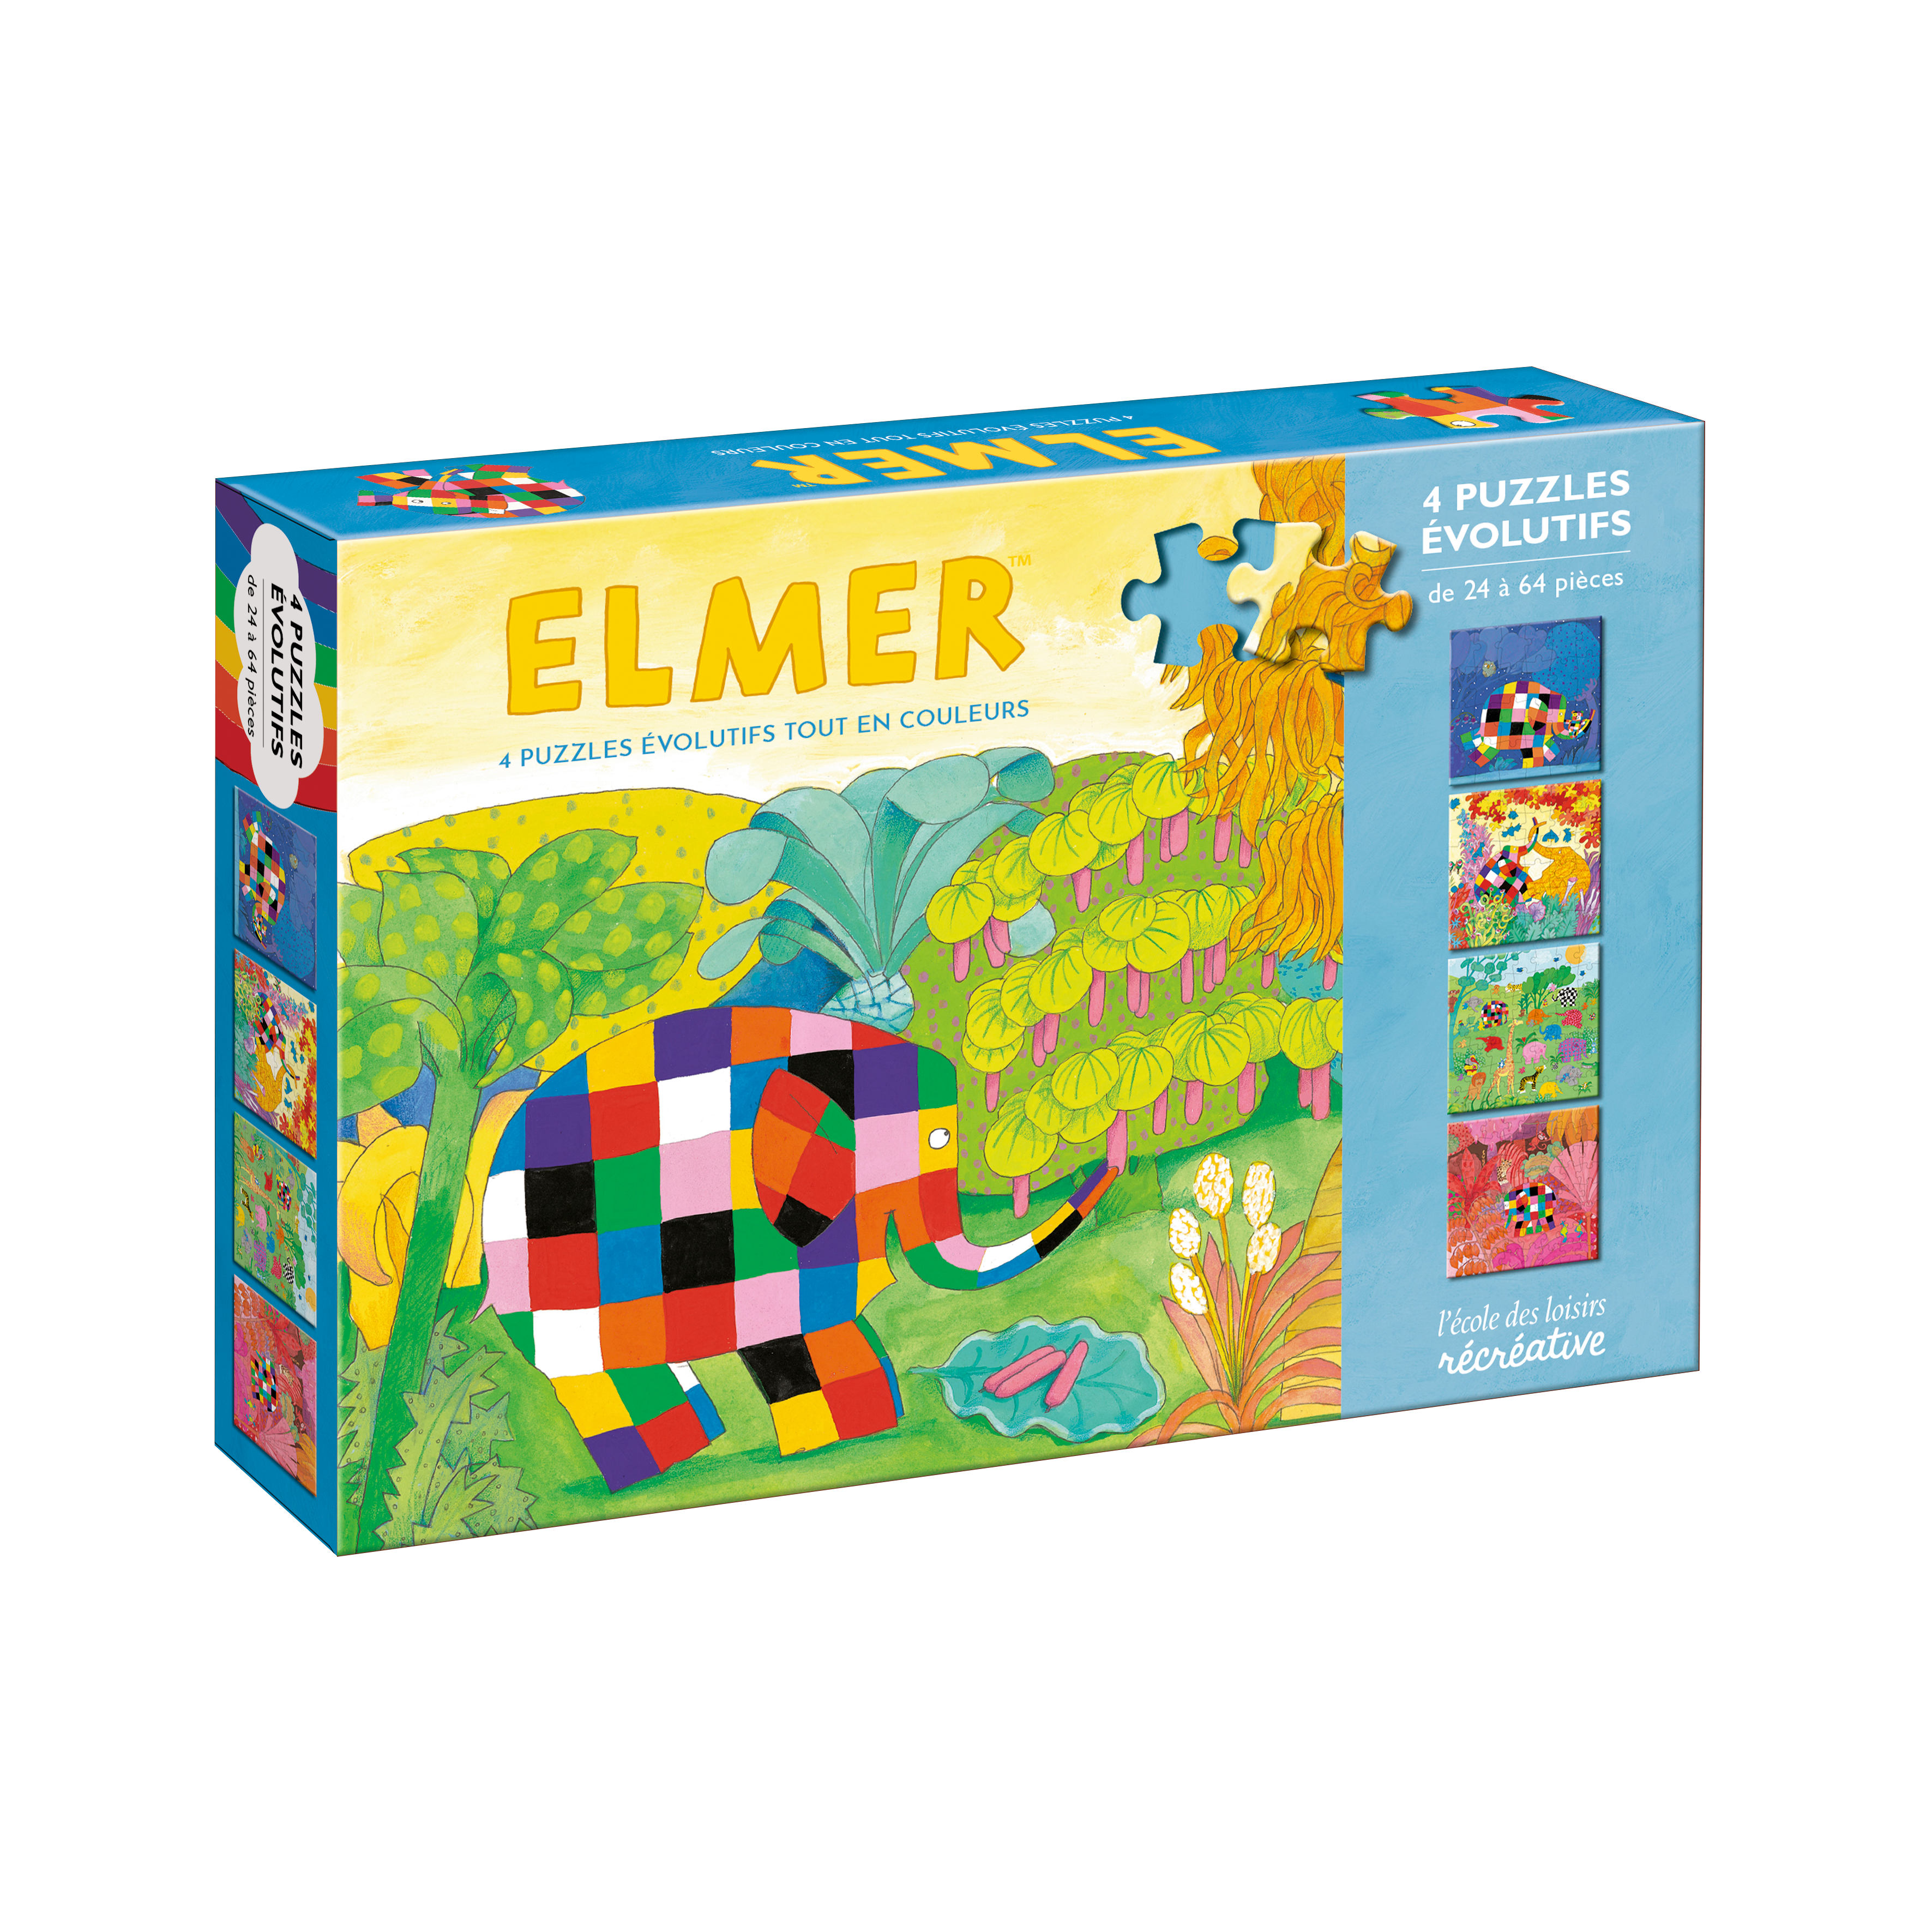 Elmer tout en couleurs - puzzles évoltuifs  L'école des loisirs, Maison  d'Édition Jeunesse